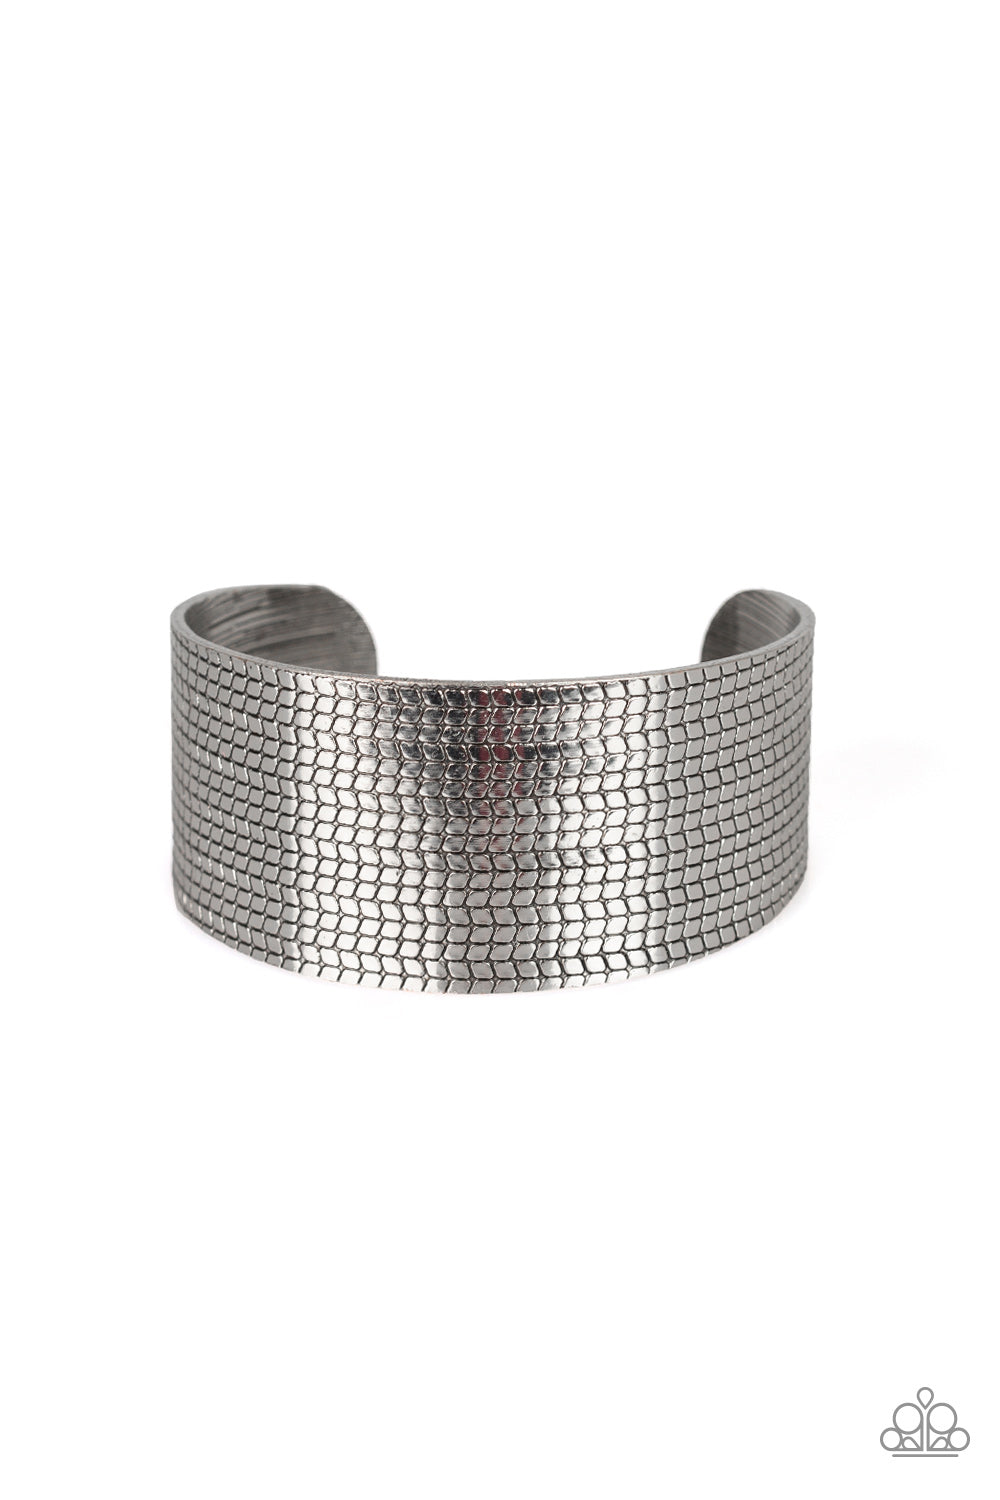 Texture Trailblazer - Silver cuff bracelet